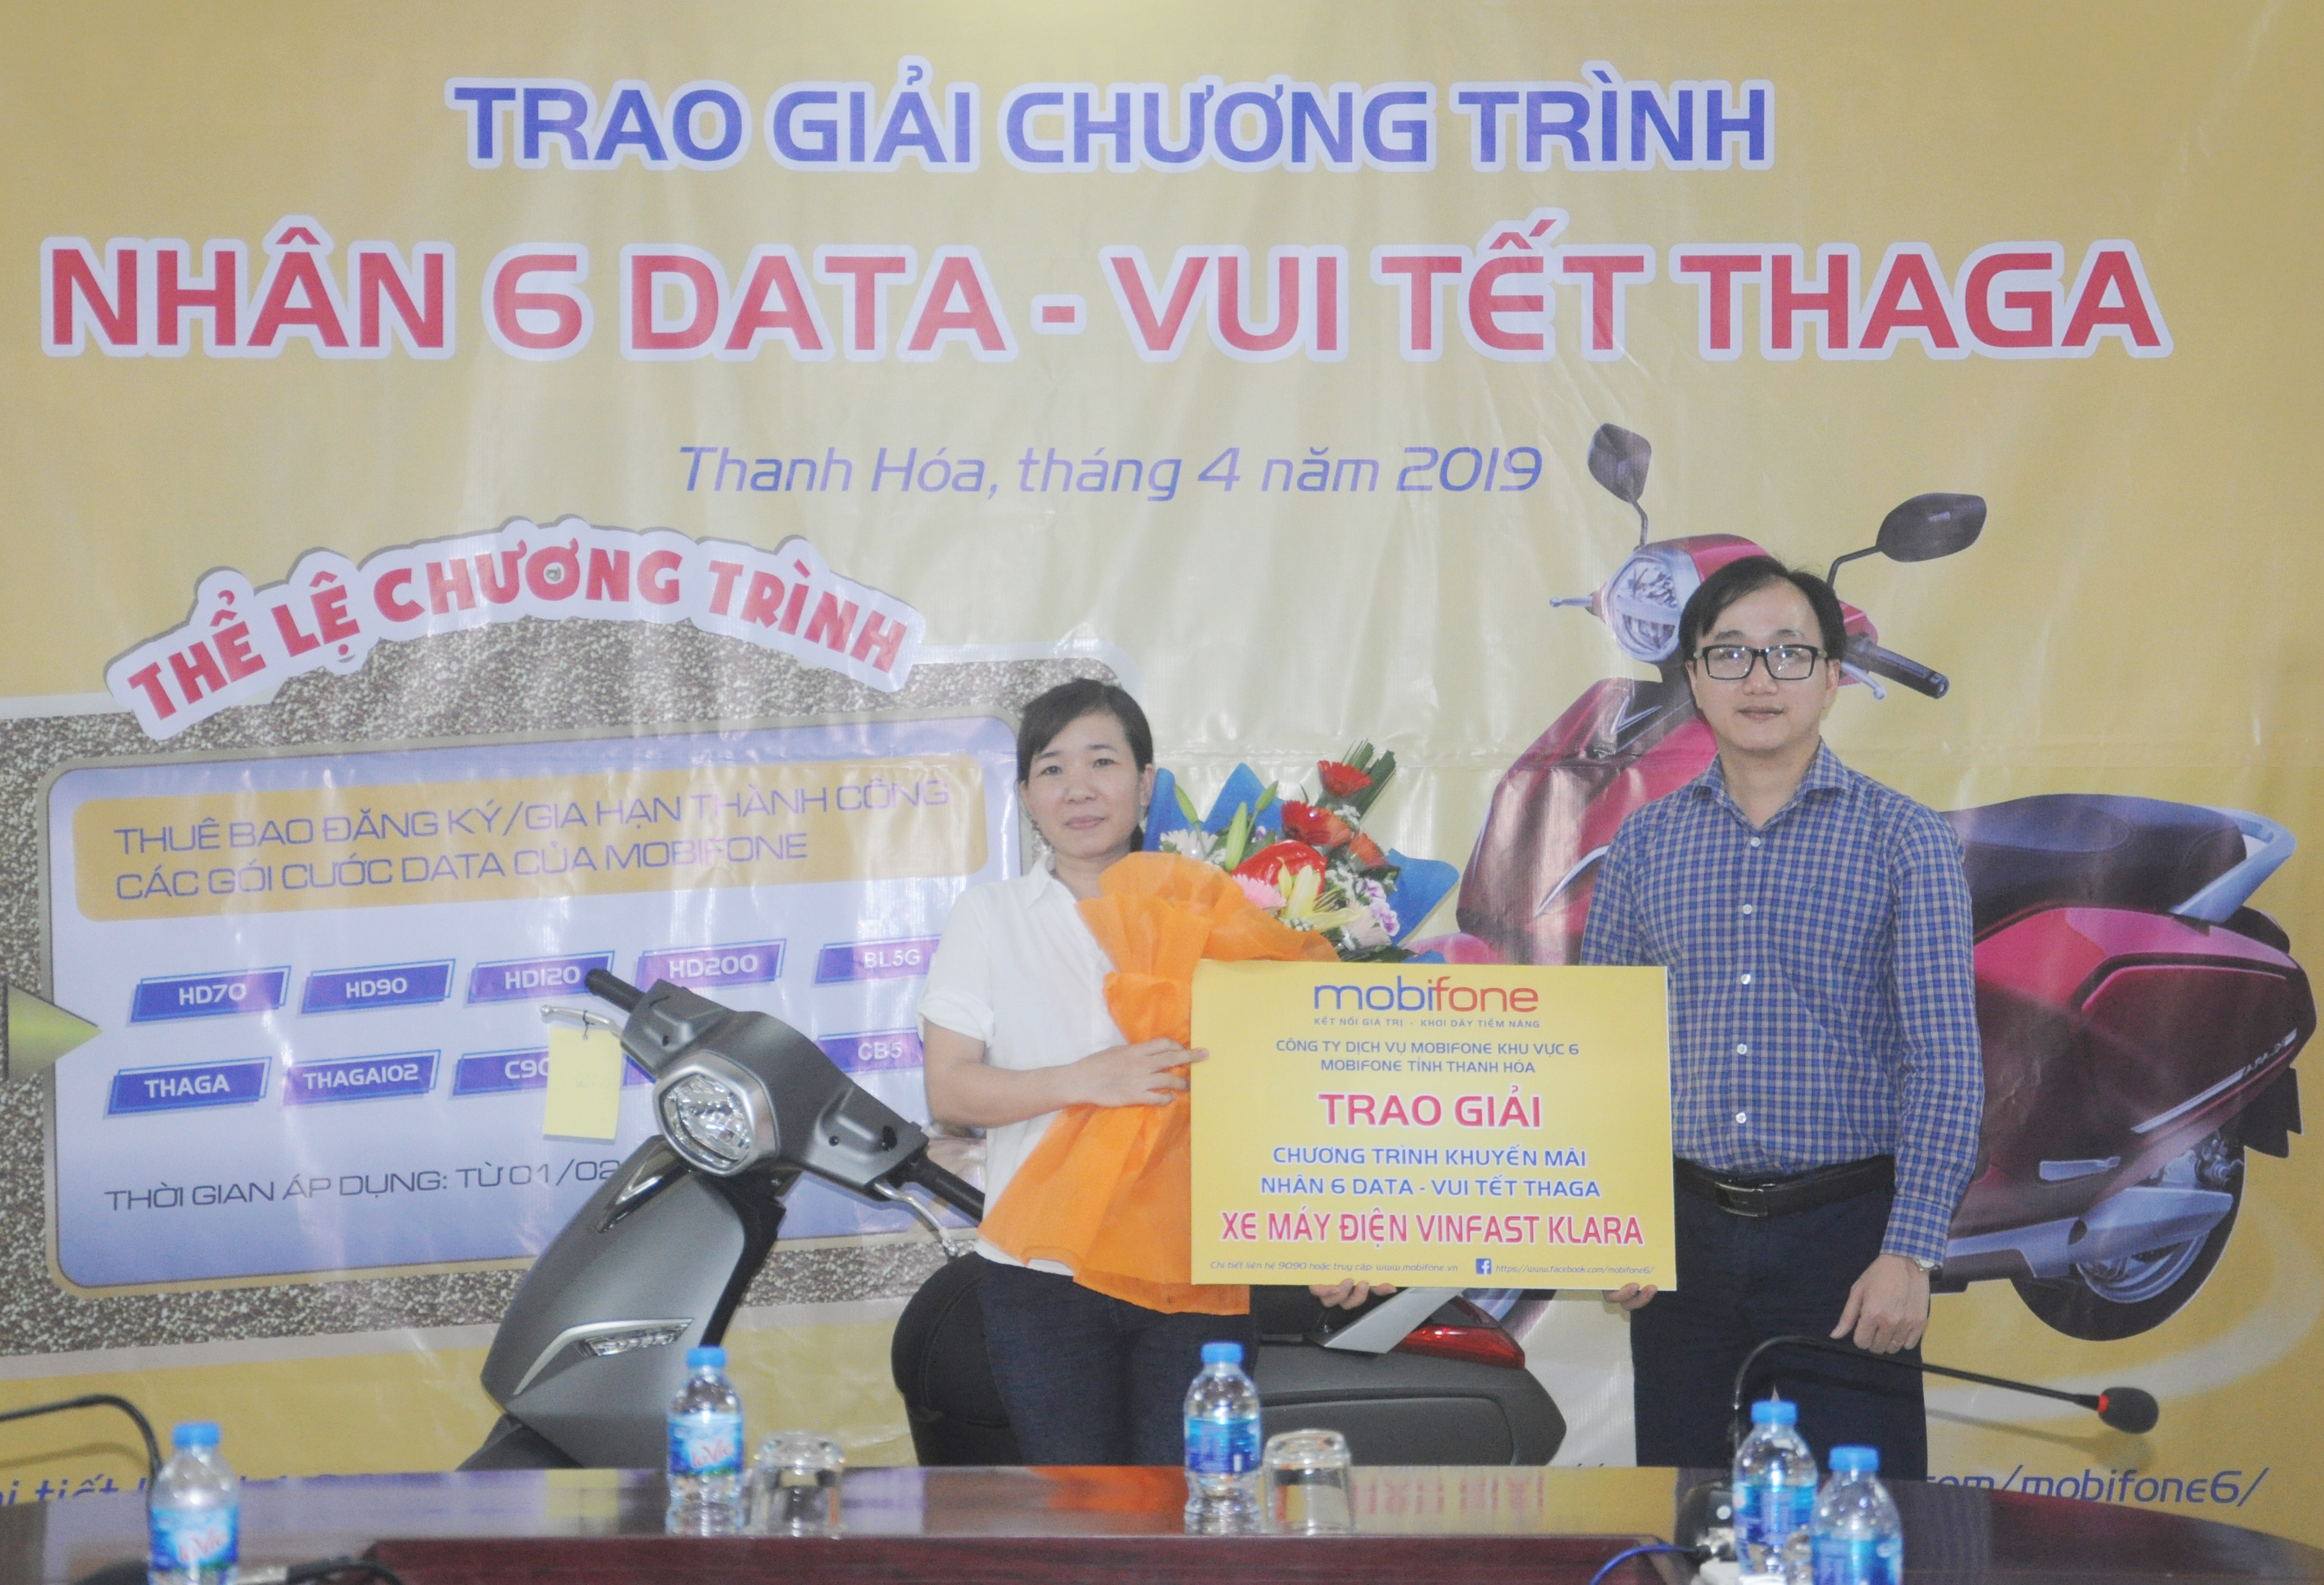 Mobifone Thanh Hóa trao giải chương trình “Nhân 6 DATA – vui Tết THAGA”